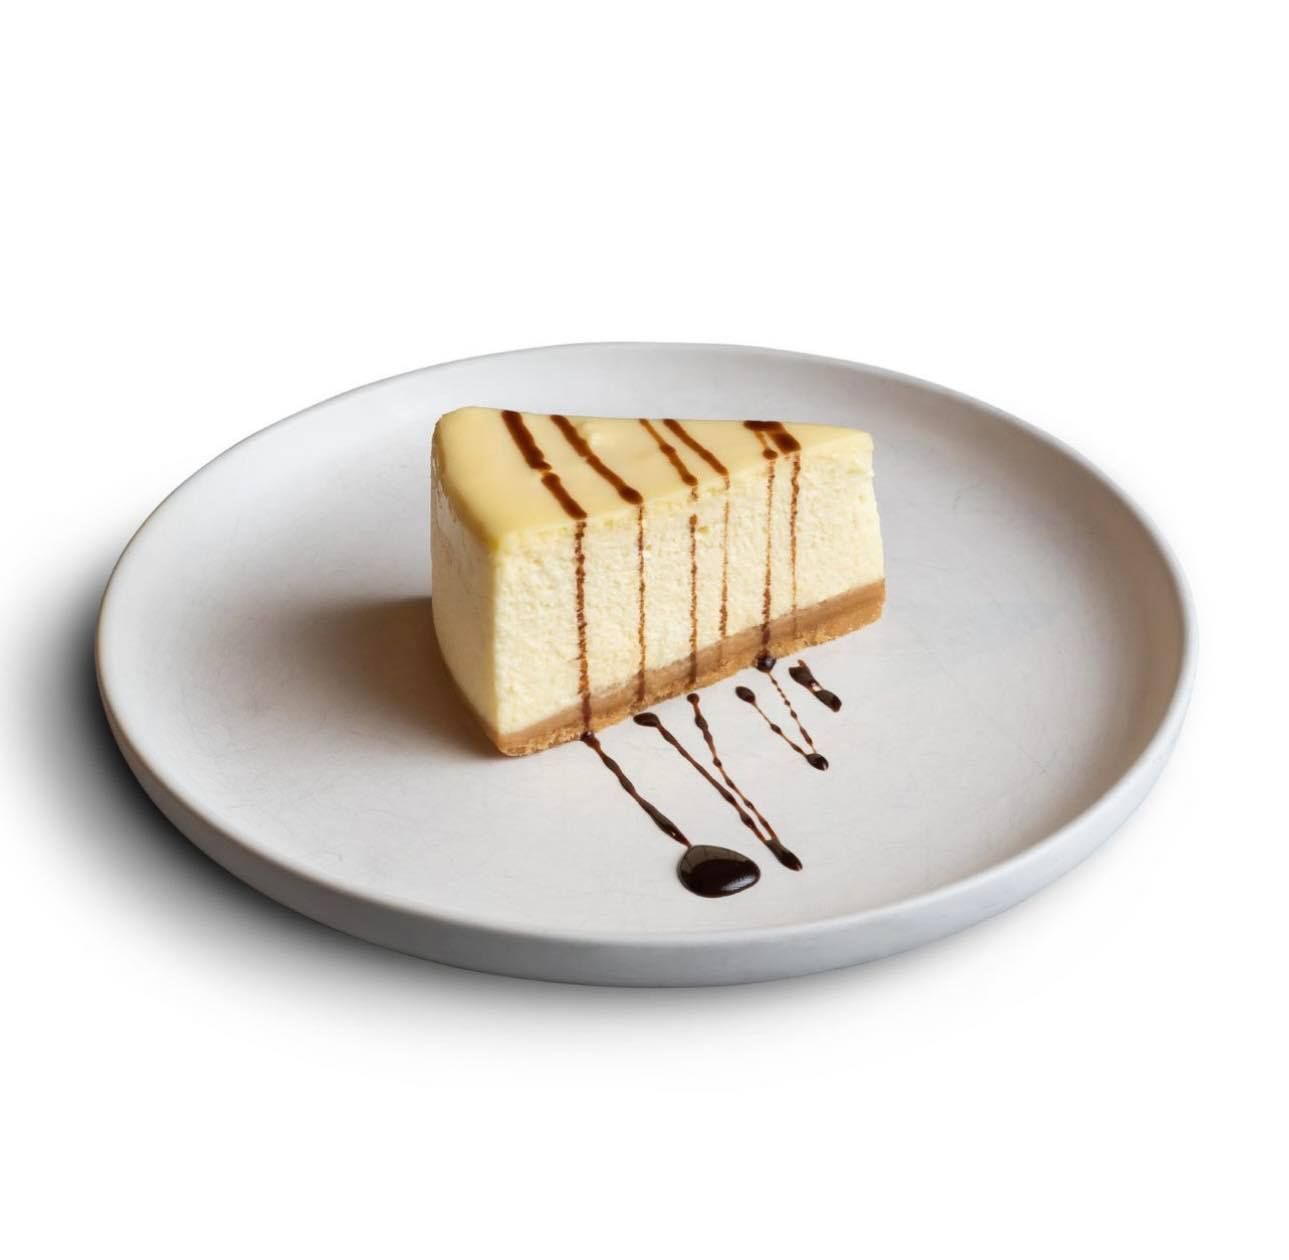  New York Cheesecake slice 